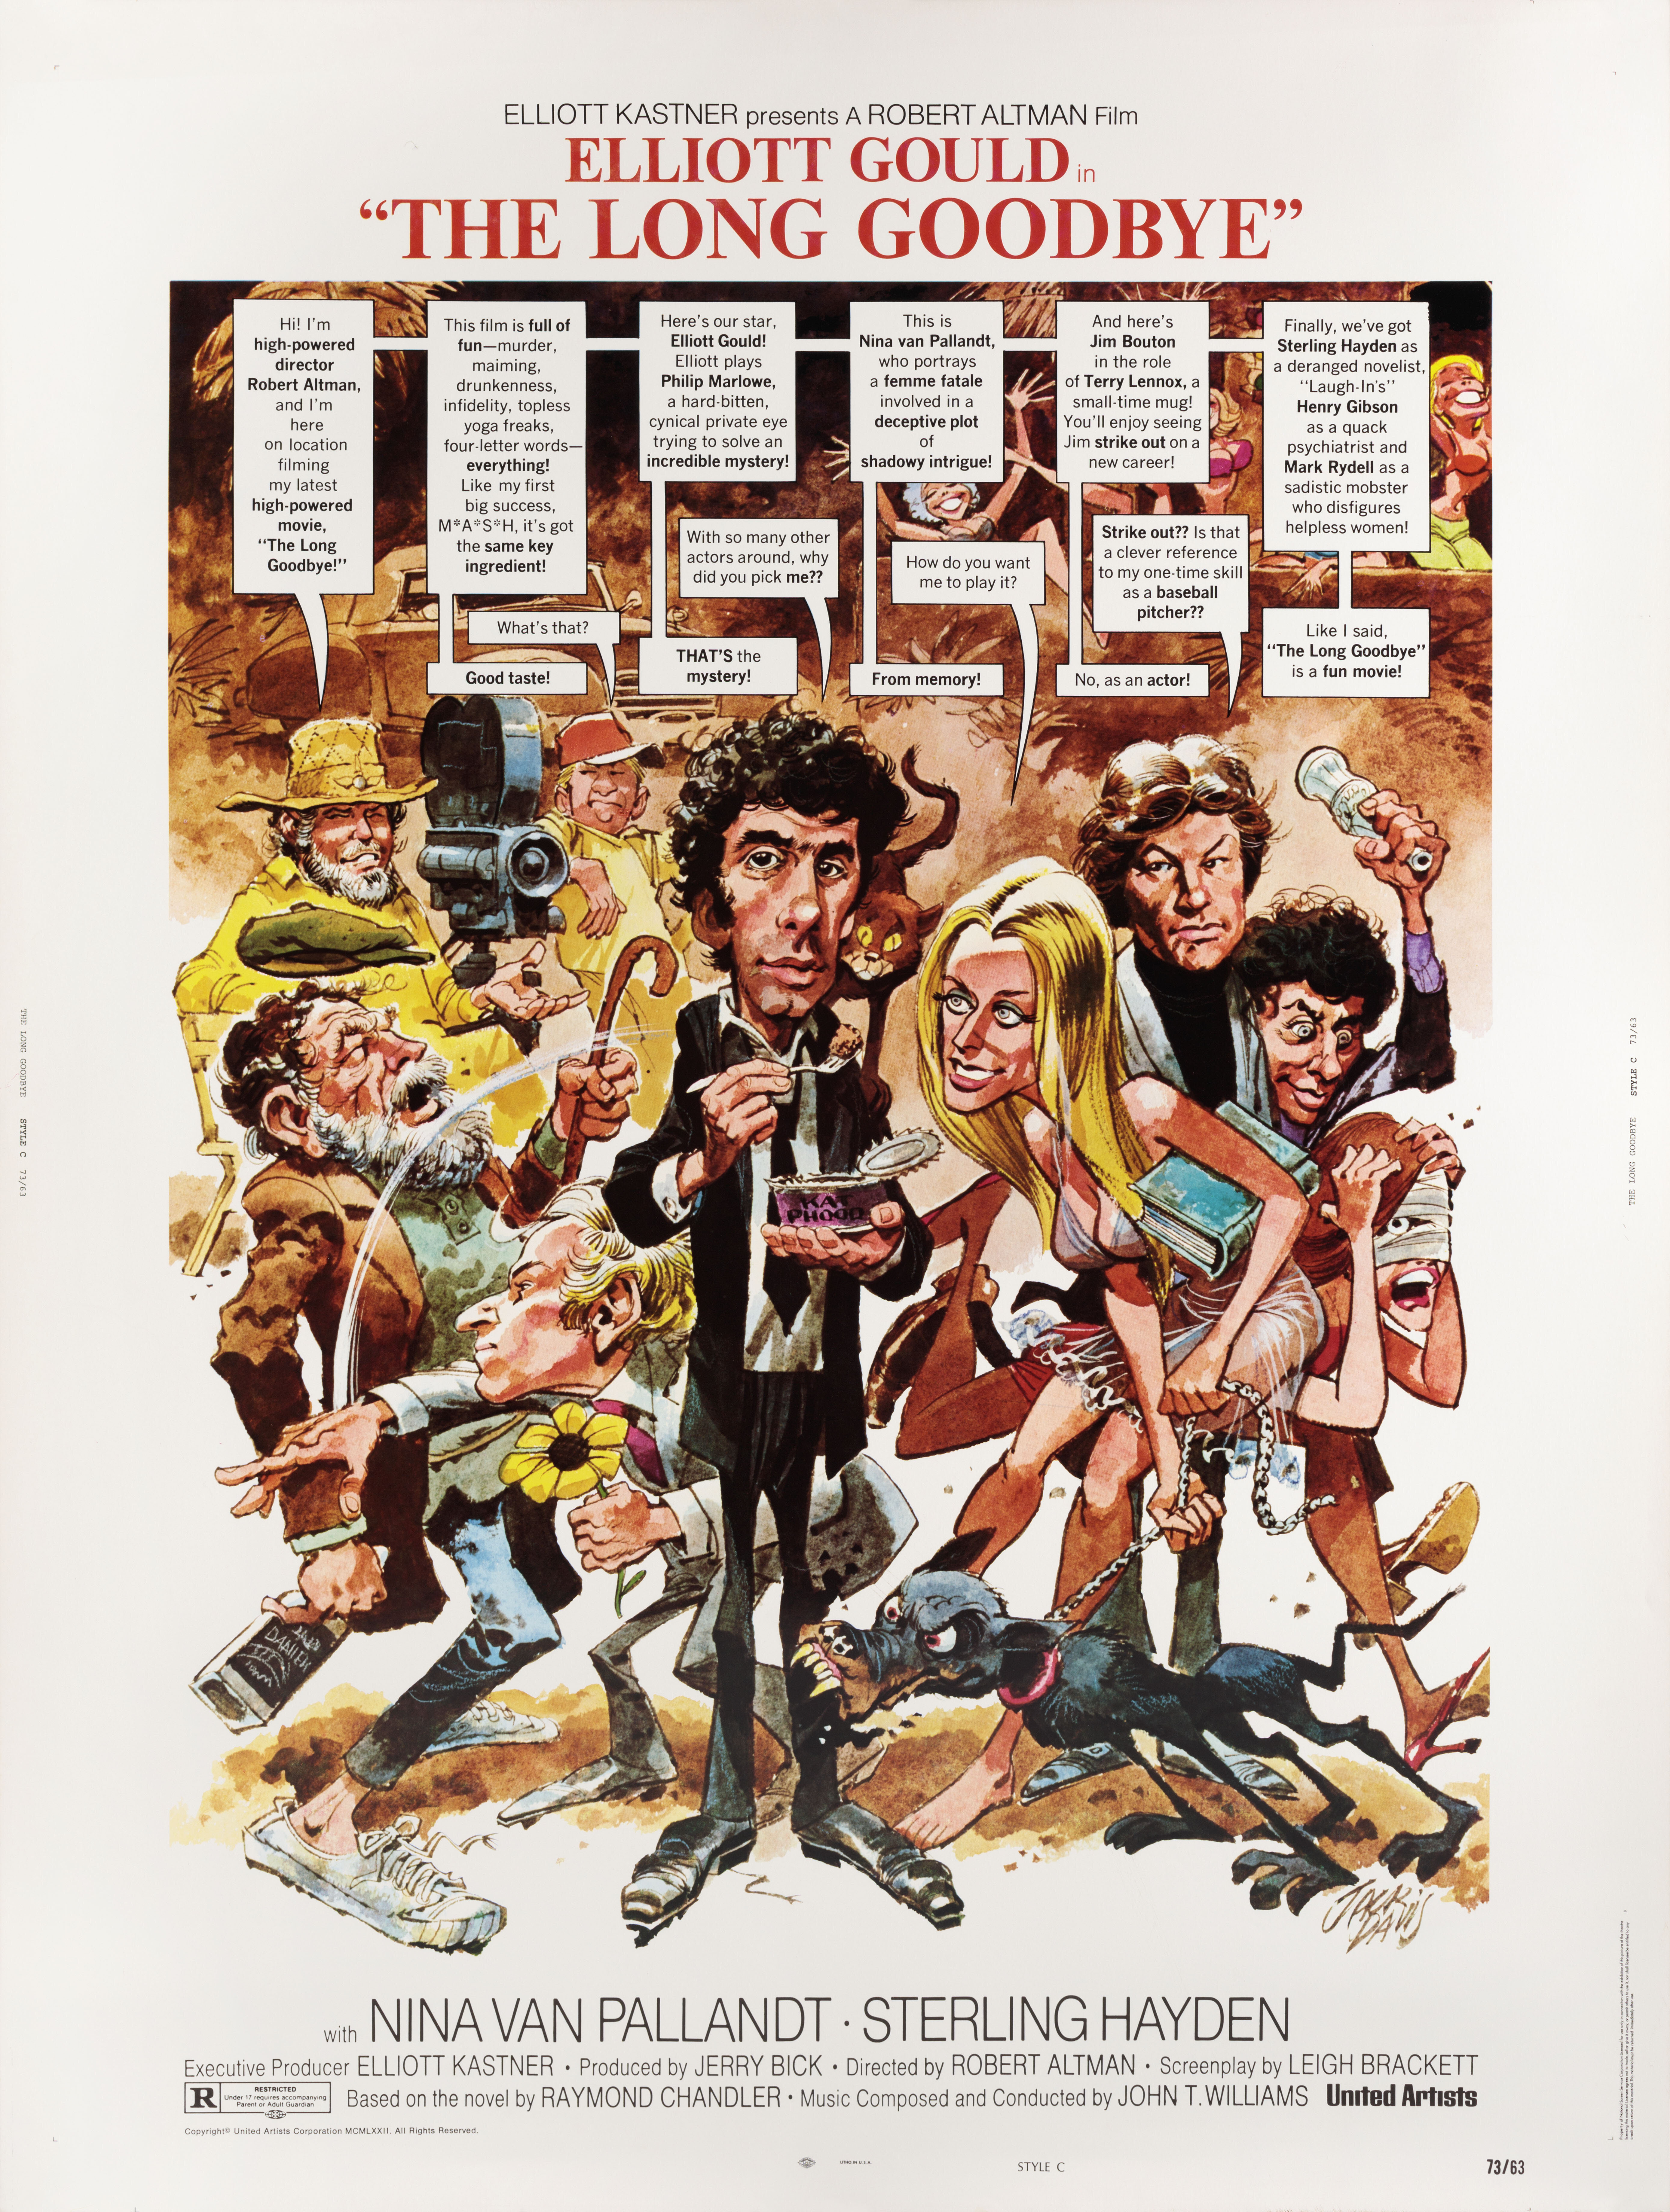 Долгое прощание (The Long Goodbye, 1973), режиссёр Роберт Альтман, иллюстрированный постер к фильму (США, 1973 год), автор Джек Дэвис_1